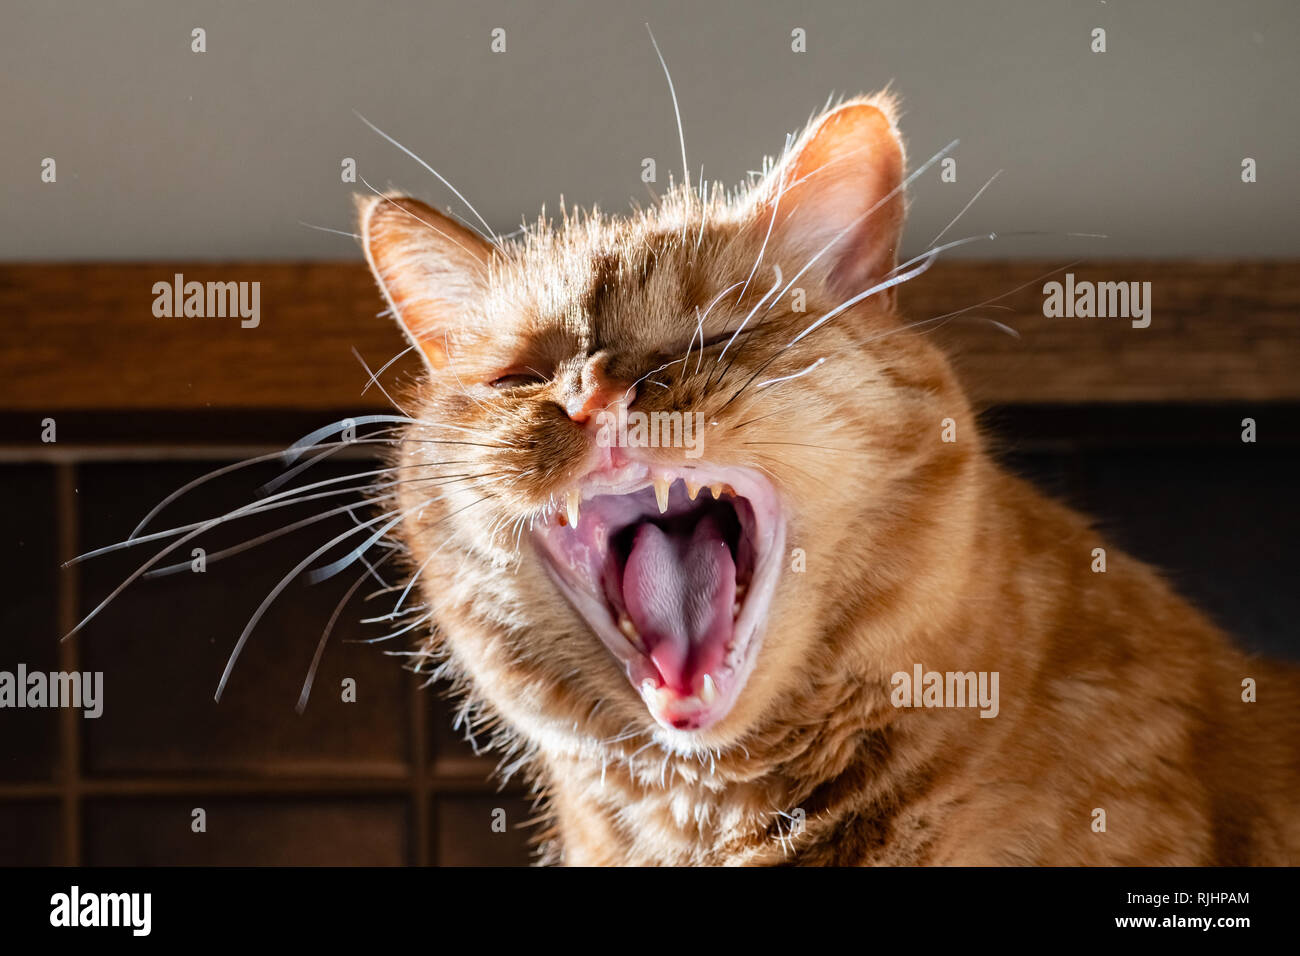 Orange adultes chat avec sa bouche grande ouverte, les dents jaunes et le tartre visible sur les dents, signe de problèmes dentaires Banque D'Images